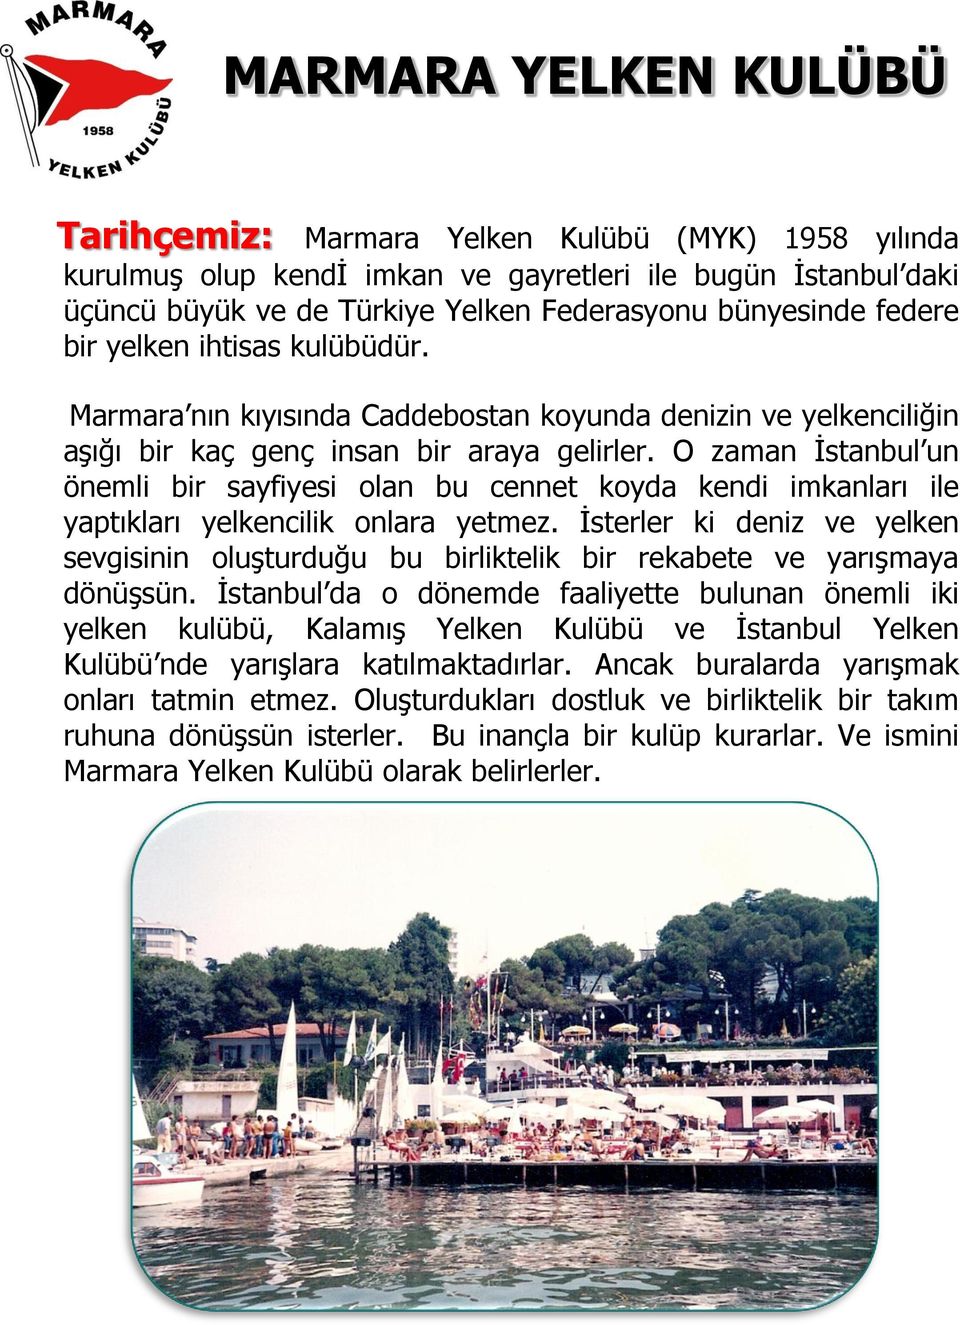 O zaman İstanbul un önemli bir sayfiyesi olan bu cennet koyda kendi imkanları ile yaptıkları yelkencilik onlara yetmez.